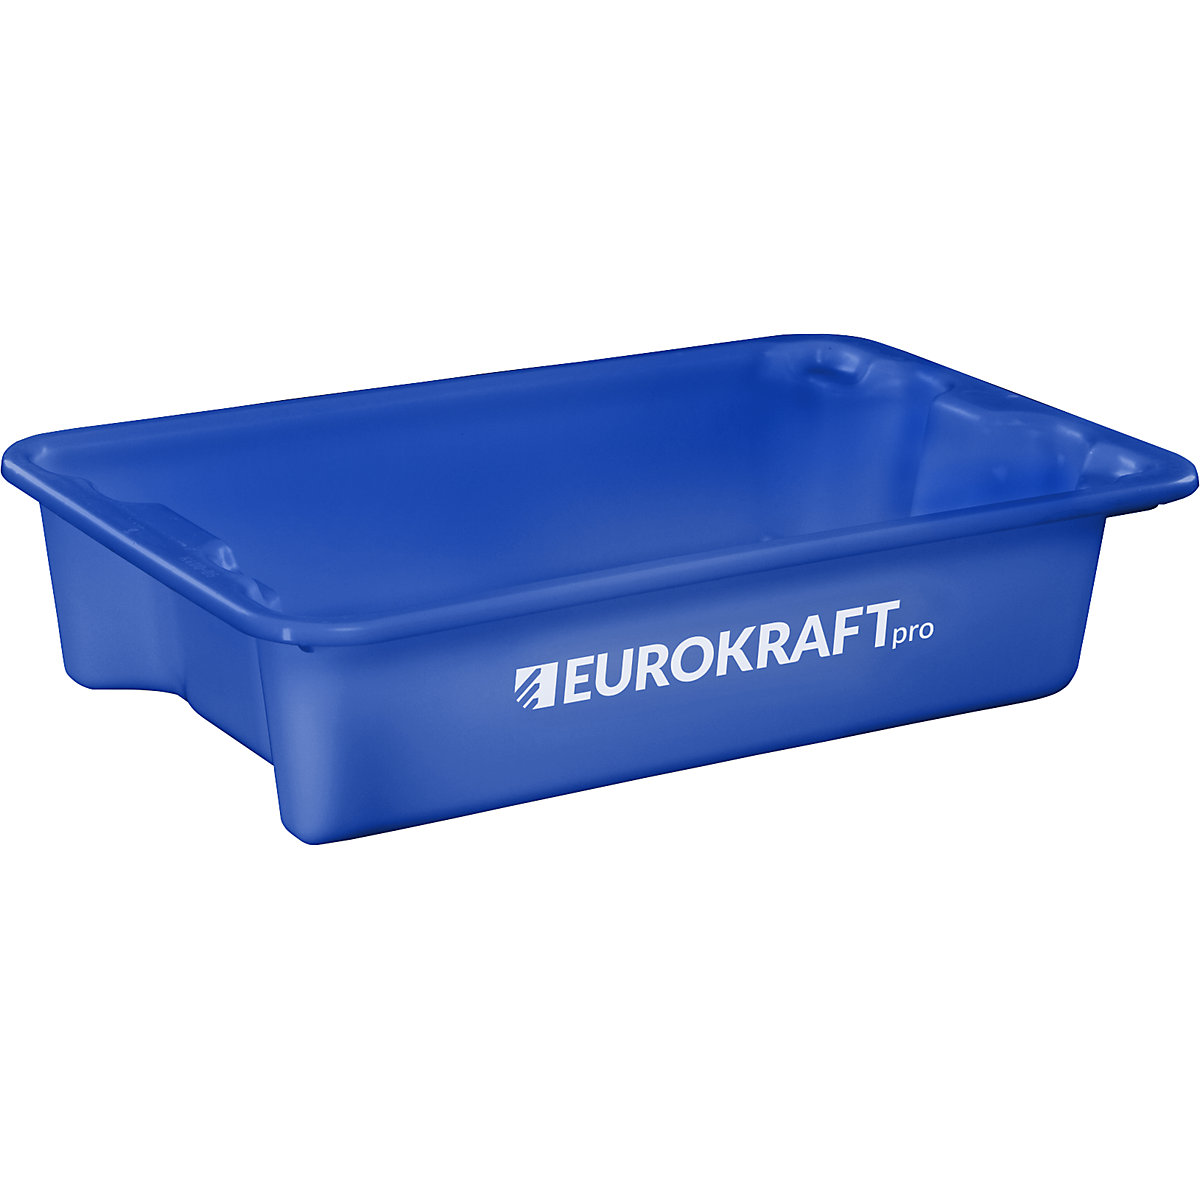 EUROKRAFTpro – Obrotowy pojemnik do ustawiania w stos z polipropylenu dopuszczonego do kontaktu z żywnością, poj. 18 l, opak. 3 szt., ścianki i dno zamknięte, niebieskie